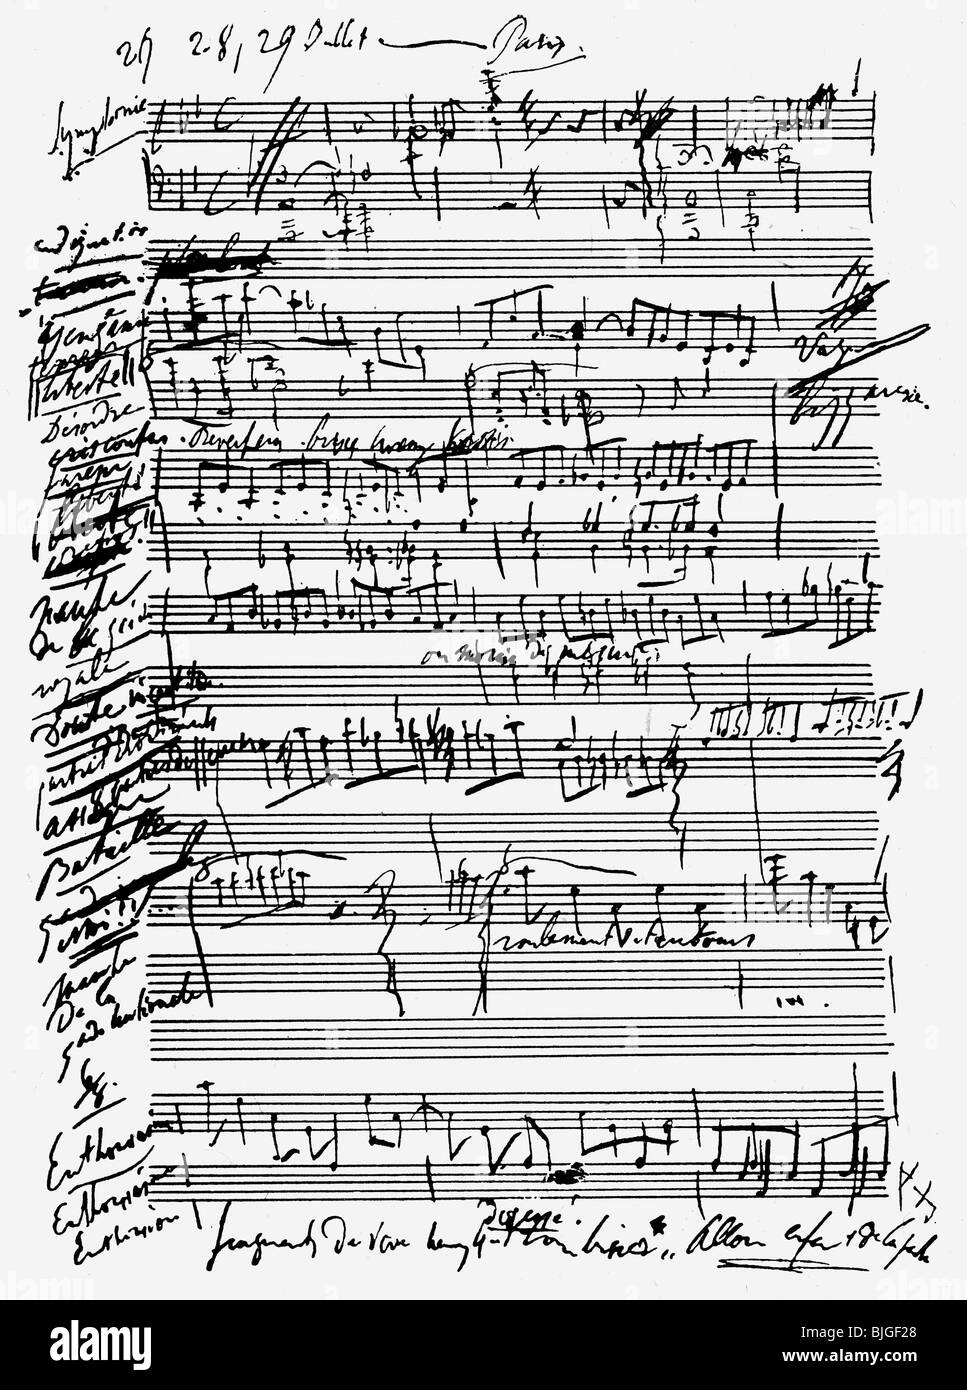 Liszt, Franz, 22.10.11.11 - 31.7.1886, ungarischer Komponist und Pianist, Werke, Partitur, Skizze für die Revolutionäre Symphonie, 1830, Stockfoto